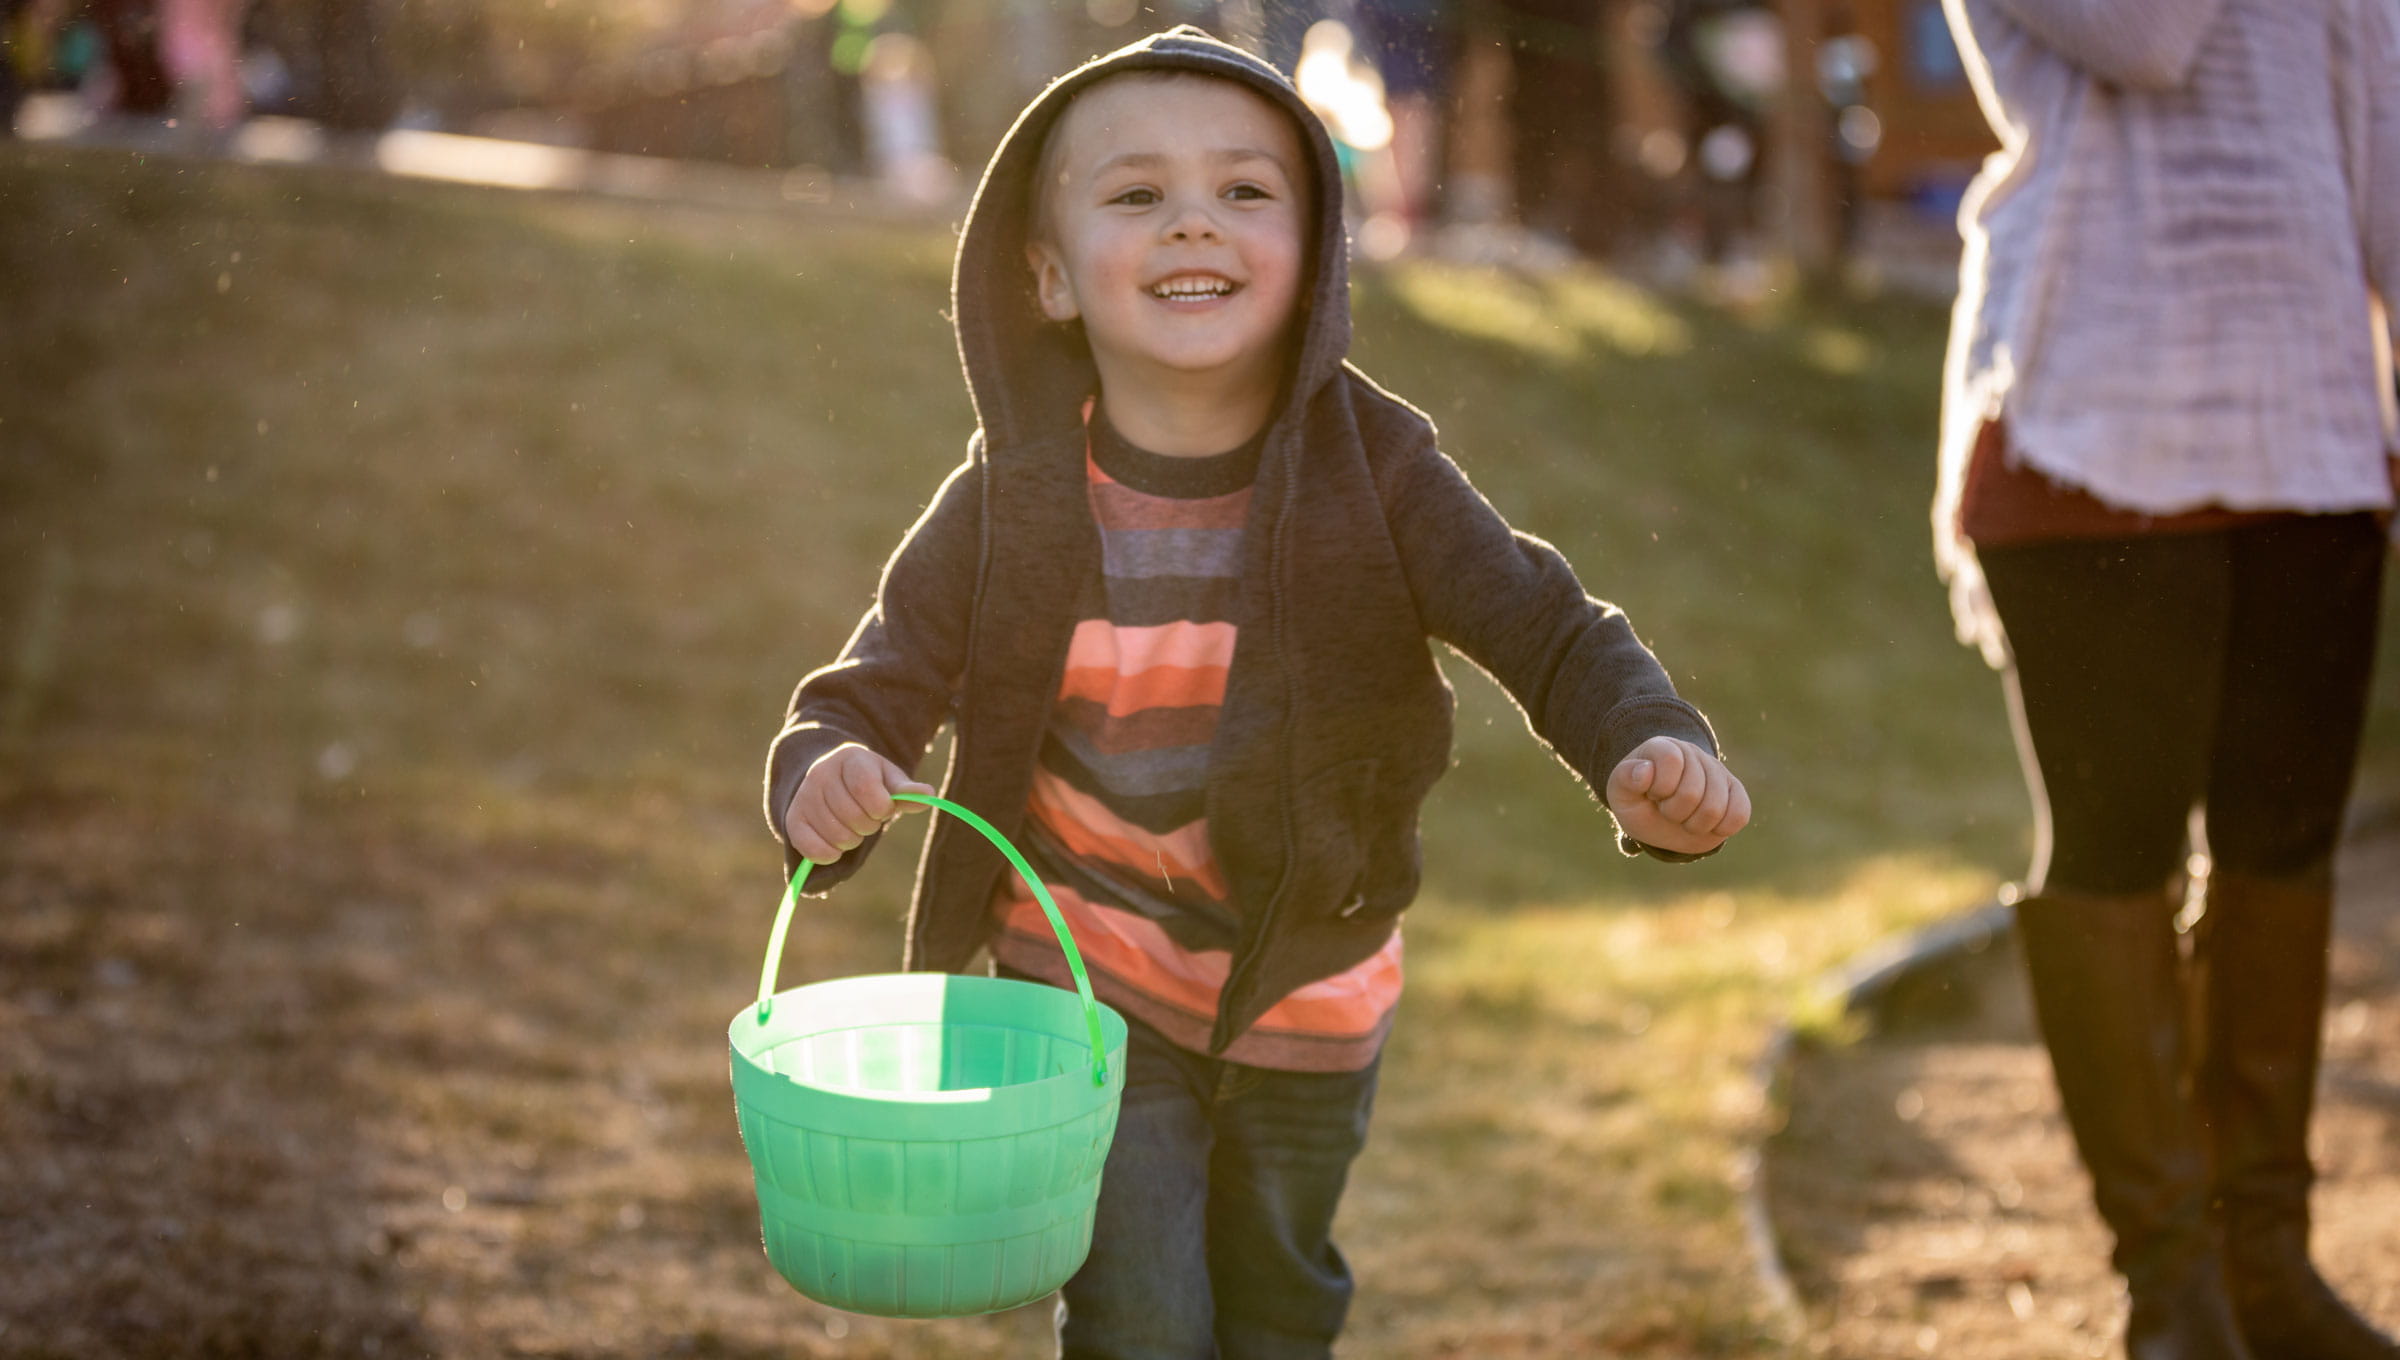 Little boy running, holding an easter basket